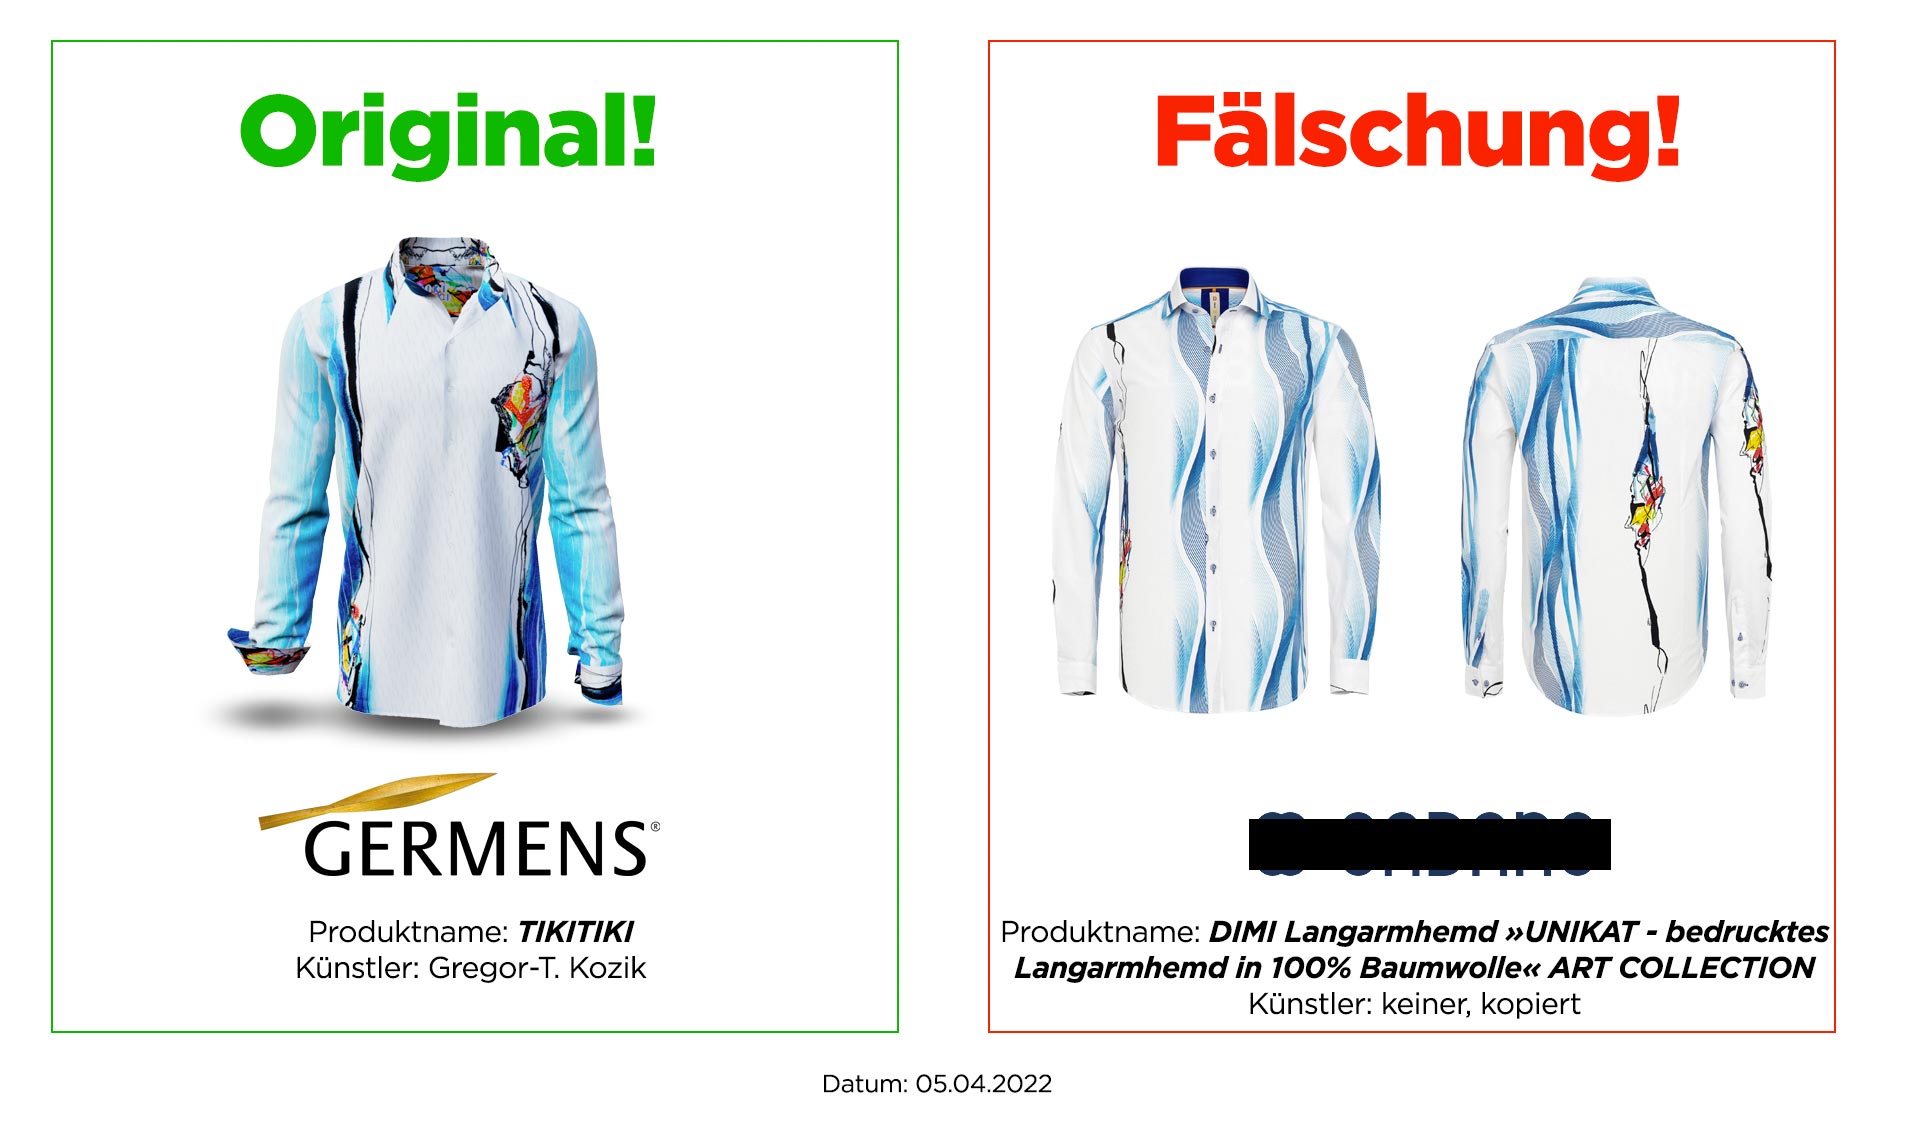 Original GERMENS® Hemd TIKITIKI und Plagiat